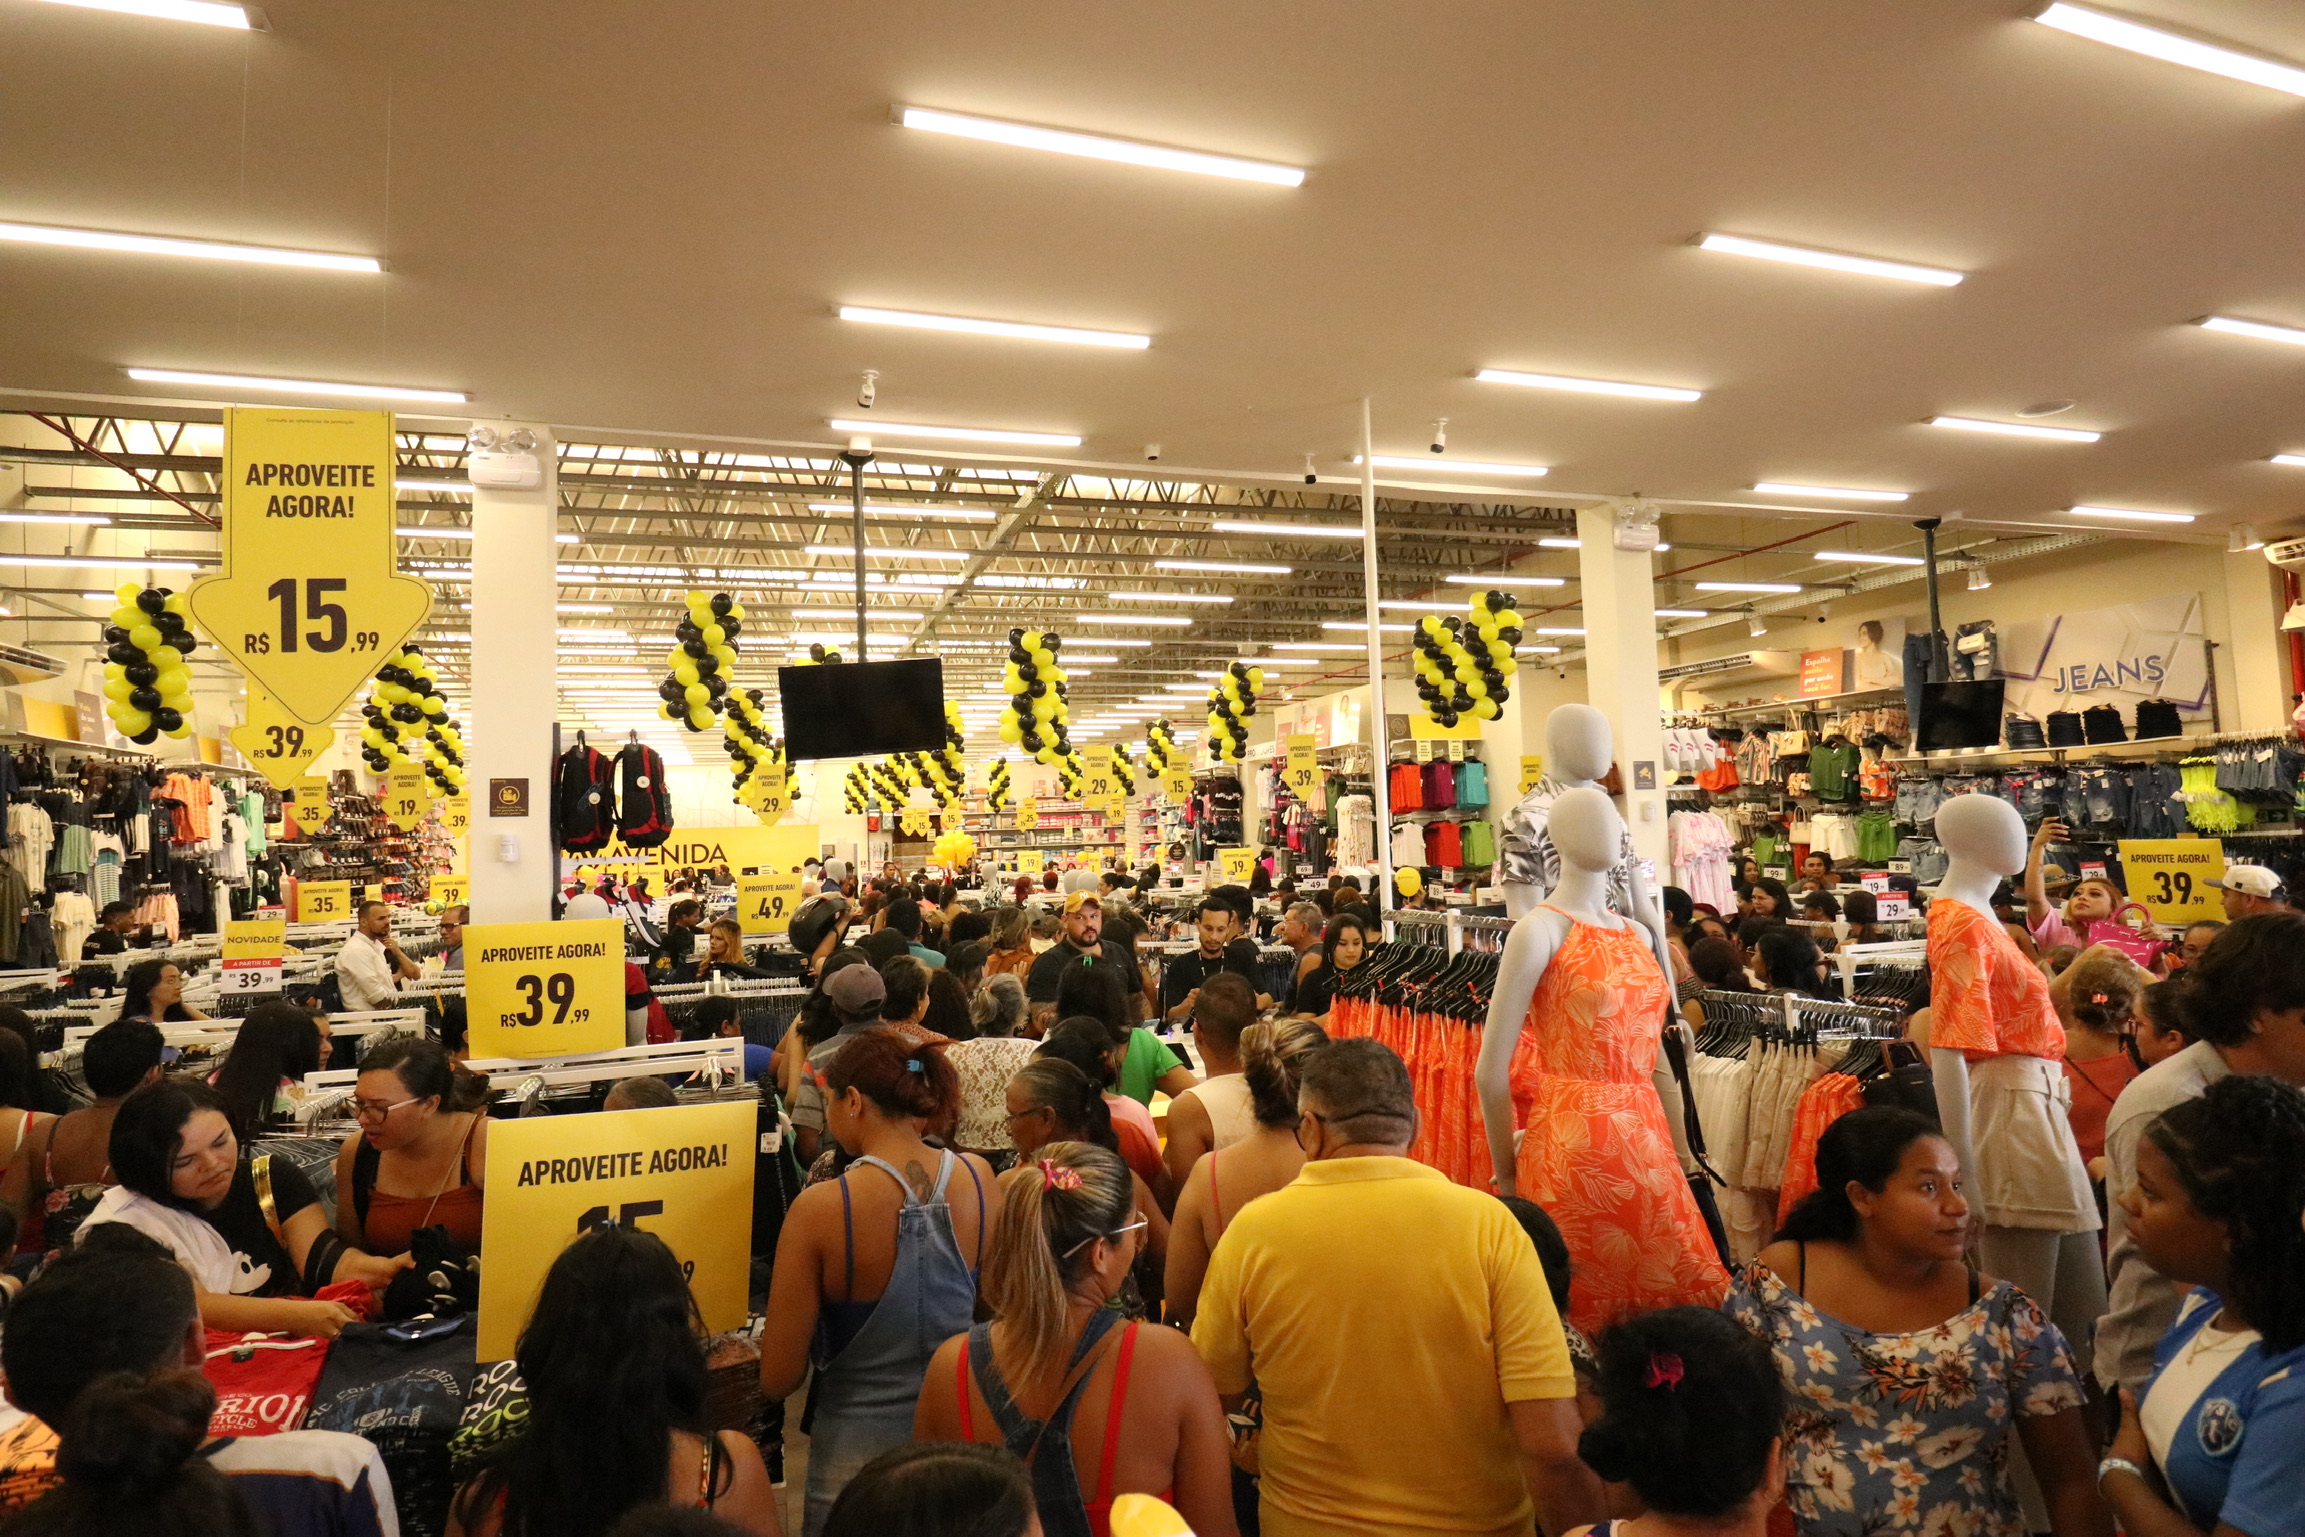 Lojas Avenida expande presença no Brasil com sete inaugurações em quatro meses